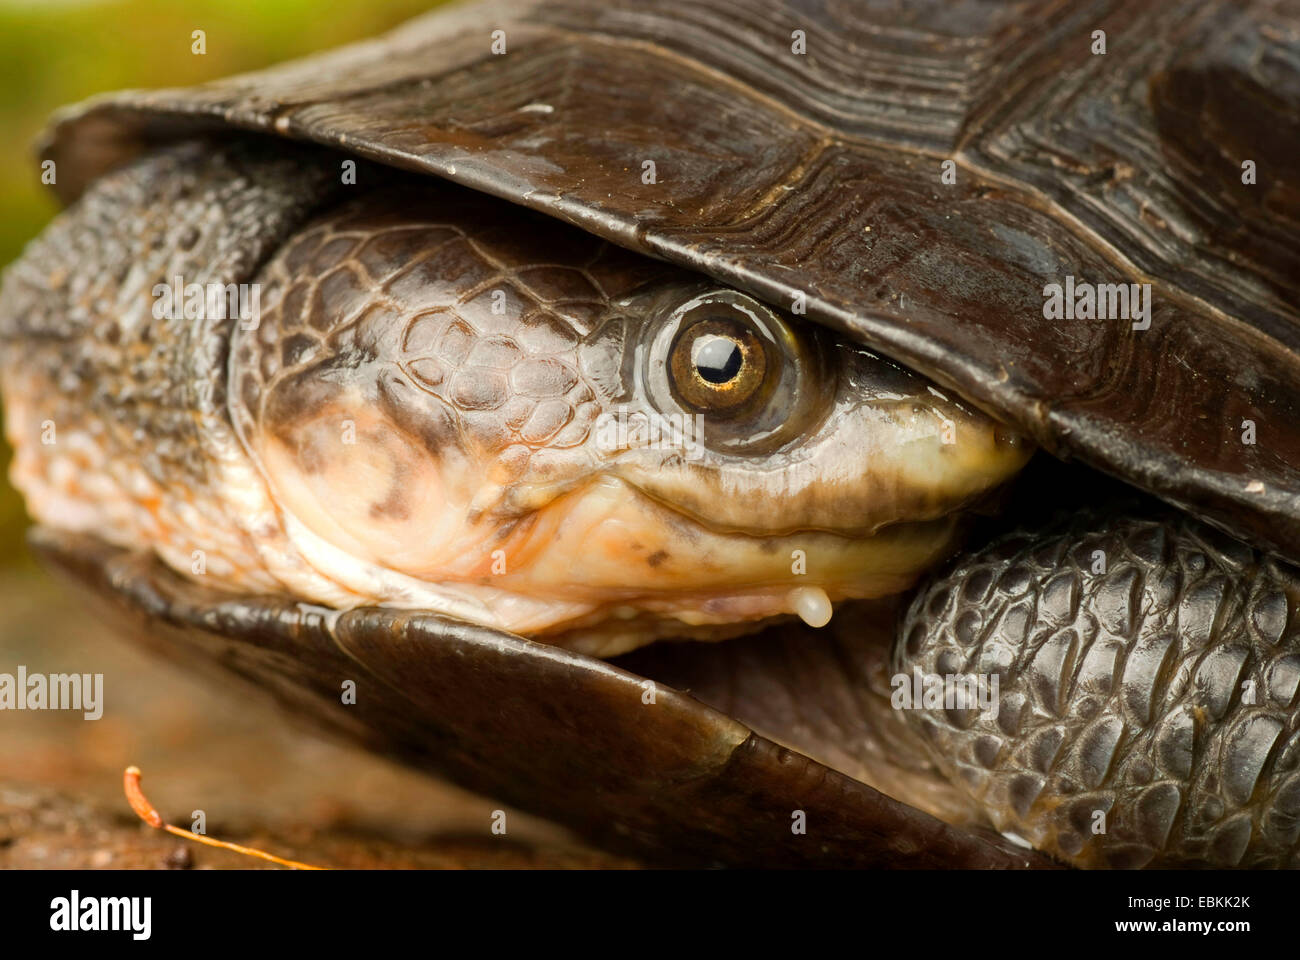 Gibba tartaruga (Mesoclemmys gibba, Phrynops gibbus), ritratto con collo contratta, ad esempio per un lato del collo a tartaruga Foto Stock